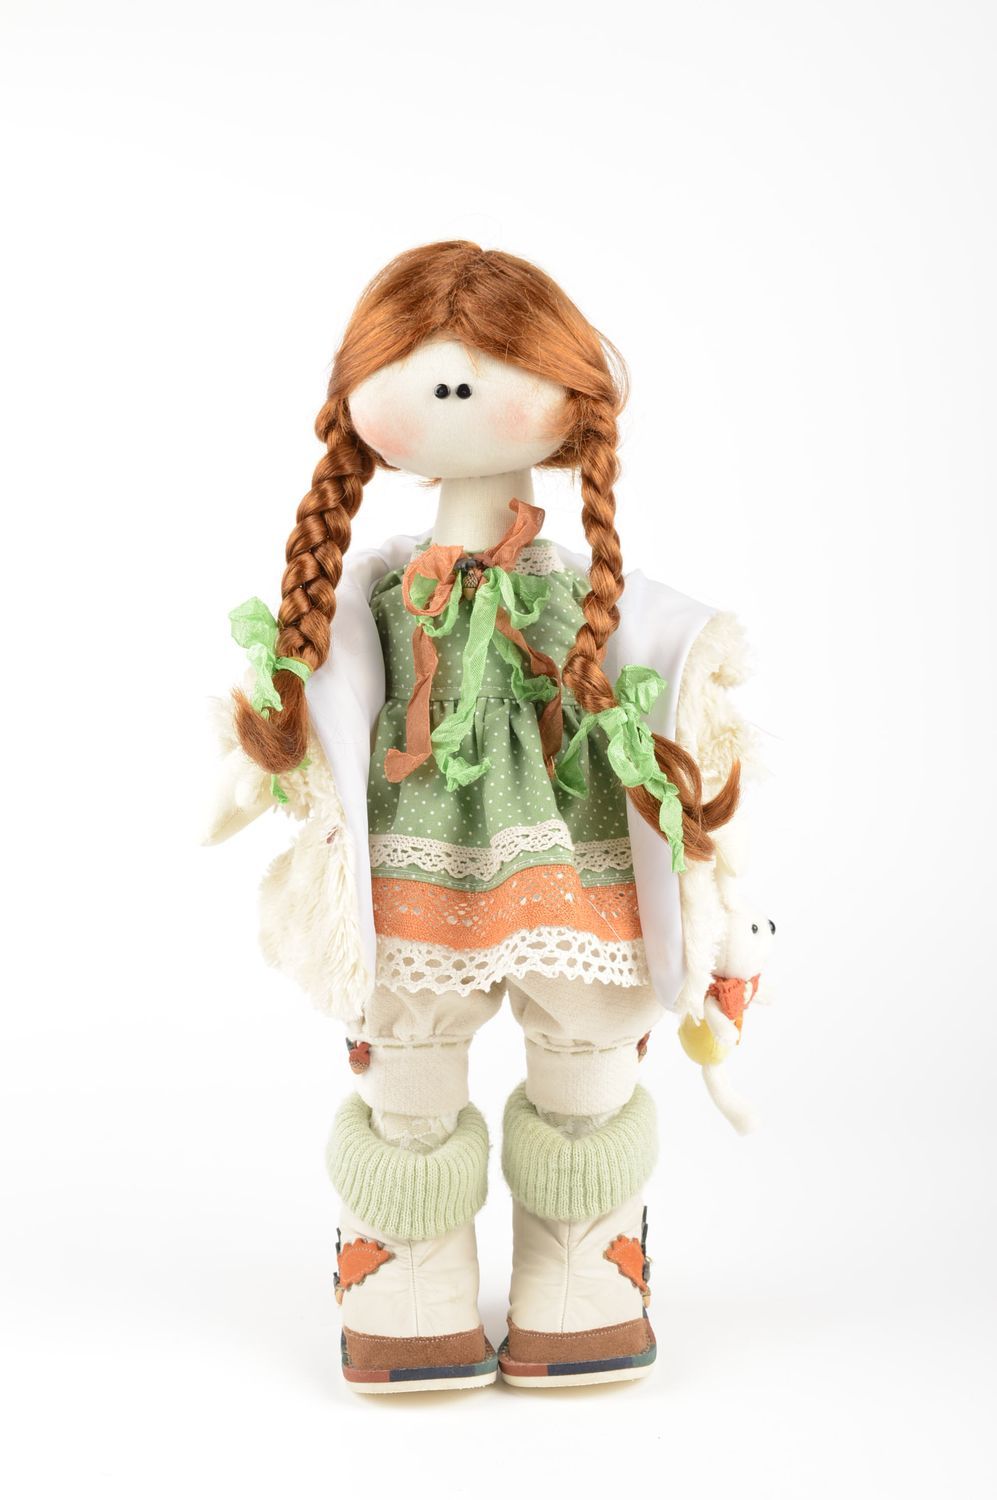 Кукла ручной работы девочка в шляпке кукла из ткани оригинальная мягкая кукла фото 2